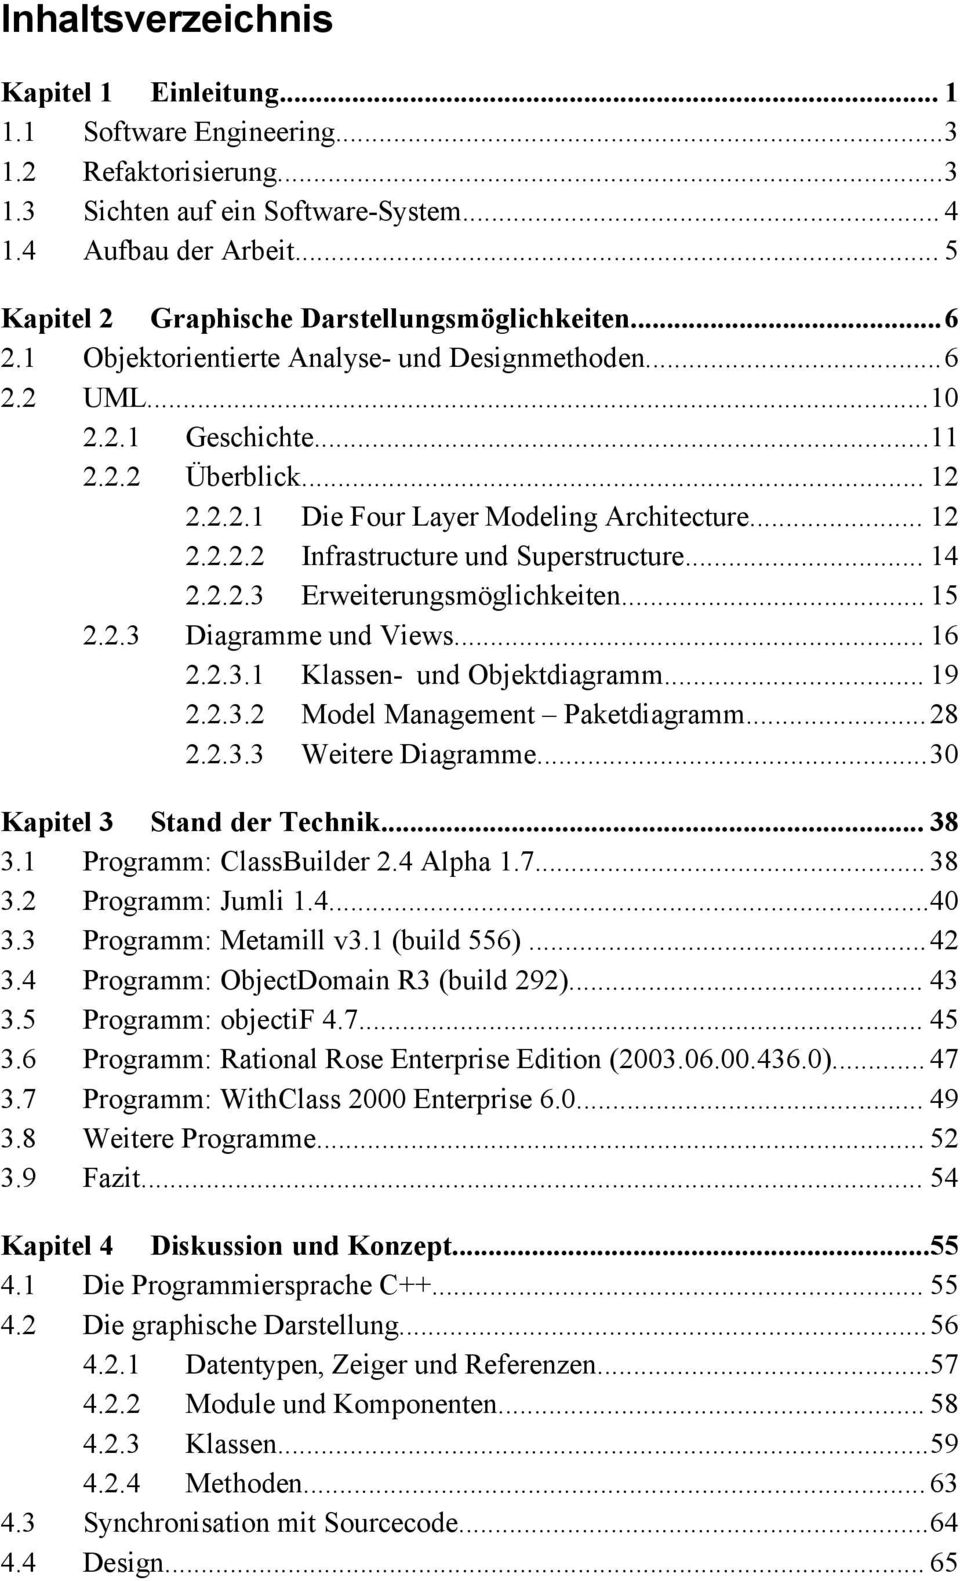 .. 12 2.2.2.2 Infrastructure und Superstructure... 14 2.2.2.3 Erweiterungsmöglichkeiten... 15 2.2.3 Diagramme und Views... 16 2.2.3.1 Klassen- und Objektdiagramm... 19 2.2.3.2 Model Management Paketdiagramm.